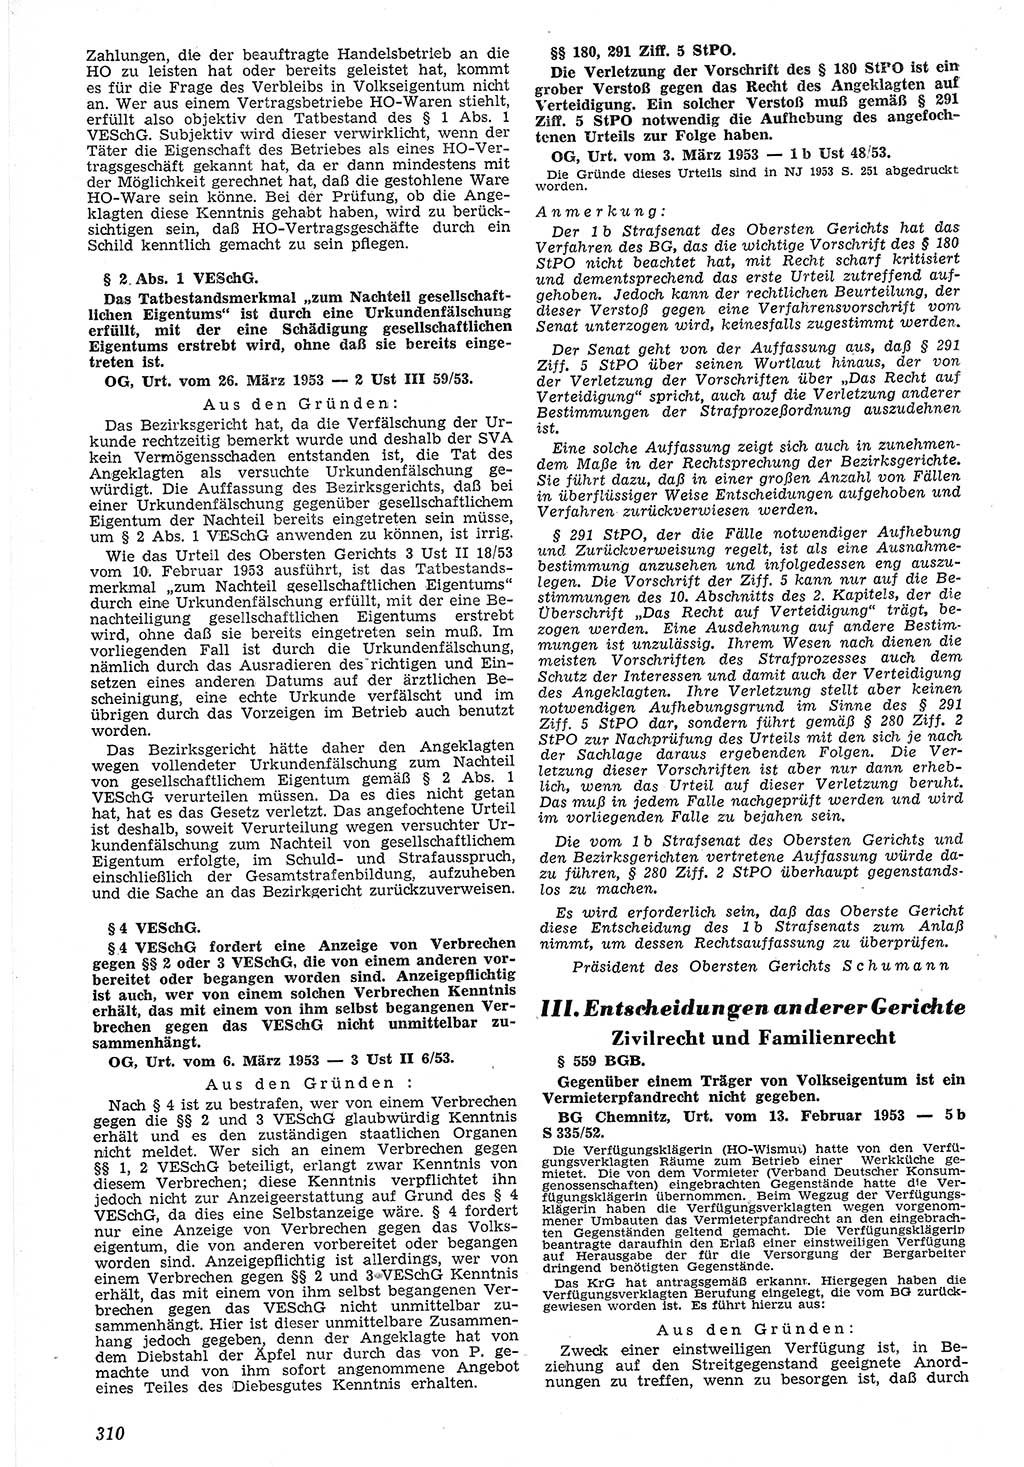 Neue Justiz (NJ), Zeitschrift für Recht und Rechtswissenschaft [Deutsche Demokratische Republik (DDR)], 7. Jahrgang 1953, Seite 310 (NJ DDR 1953, S. 310)